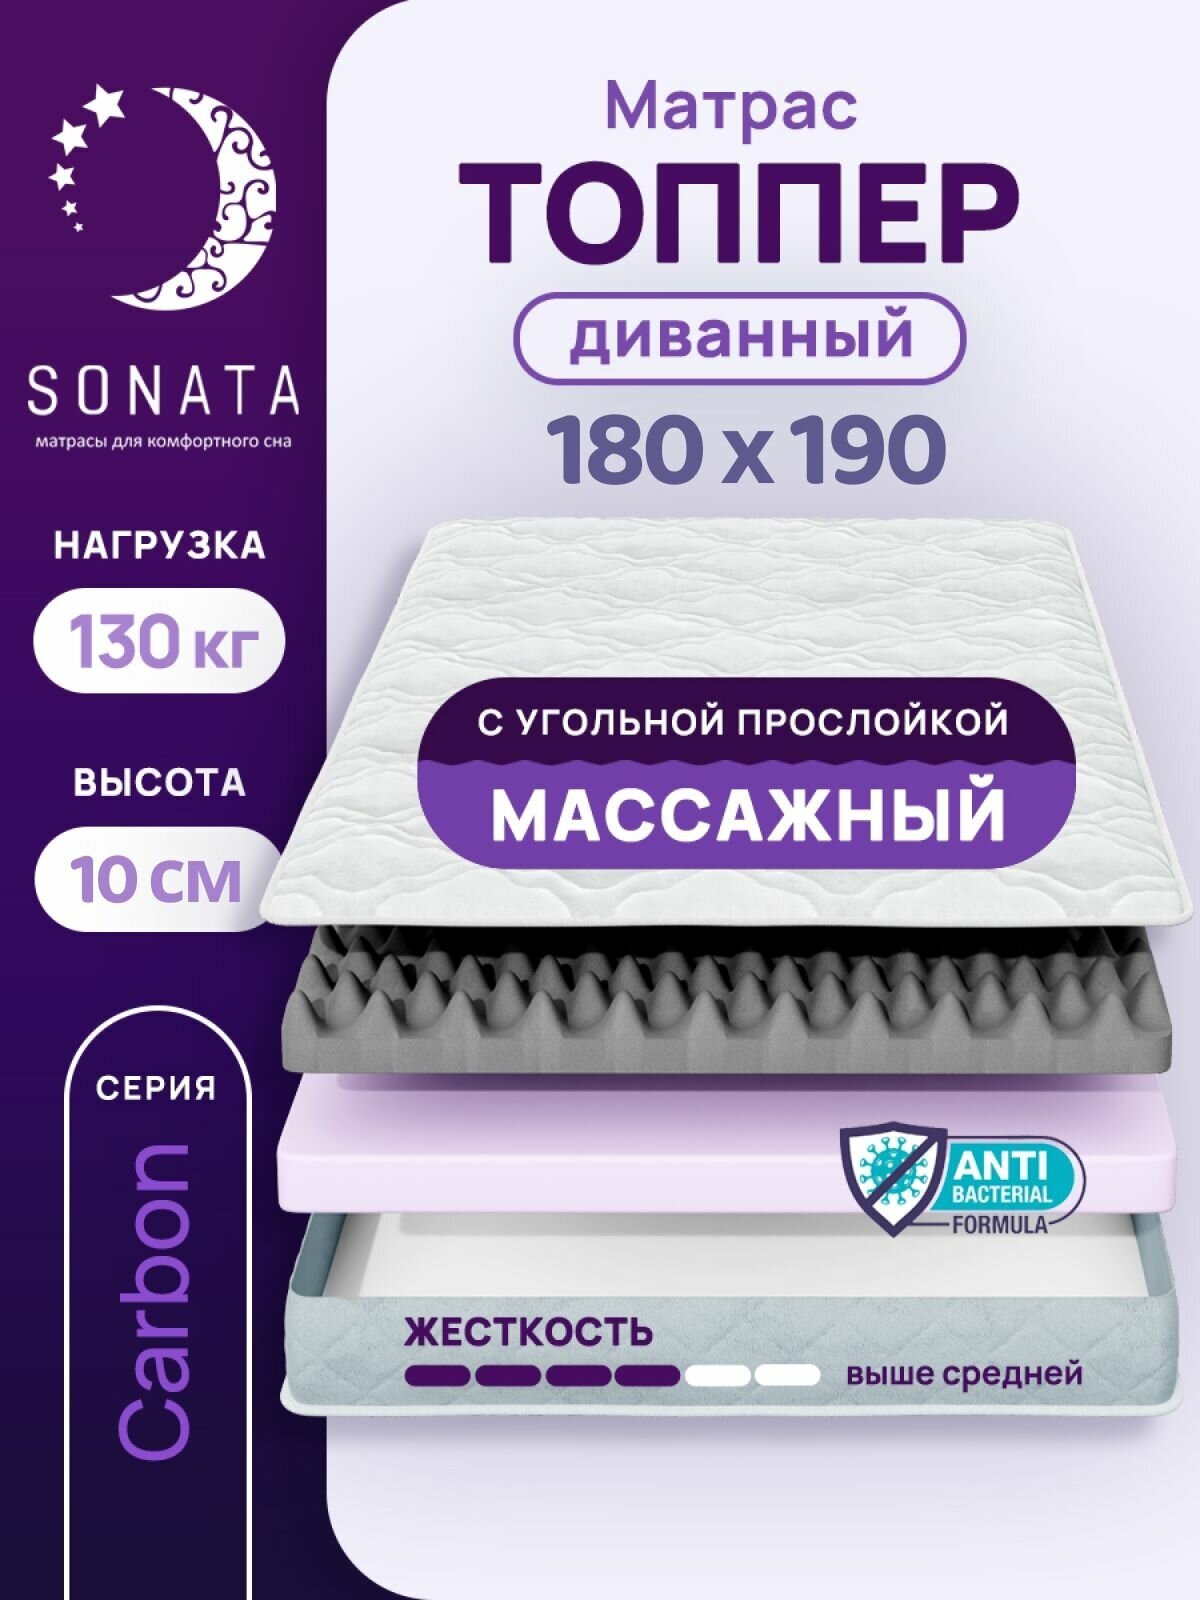 Топпер матрас 180х190 см SONATA, ортопедический, беспружинный, двуспальный, тонкий матрац для дивана, кровати, высота 10 см с массажным эффектом